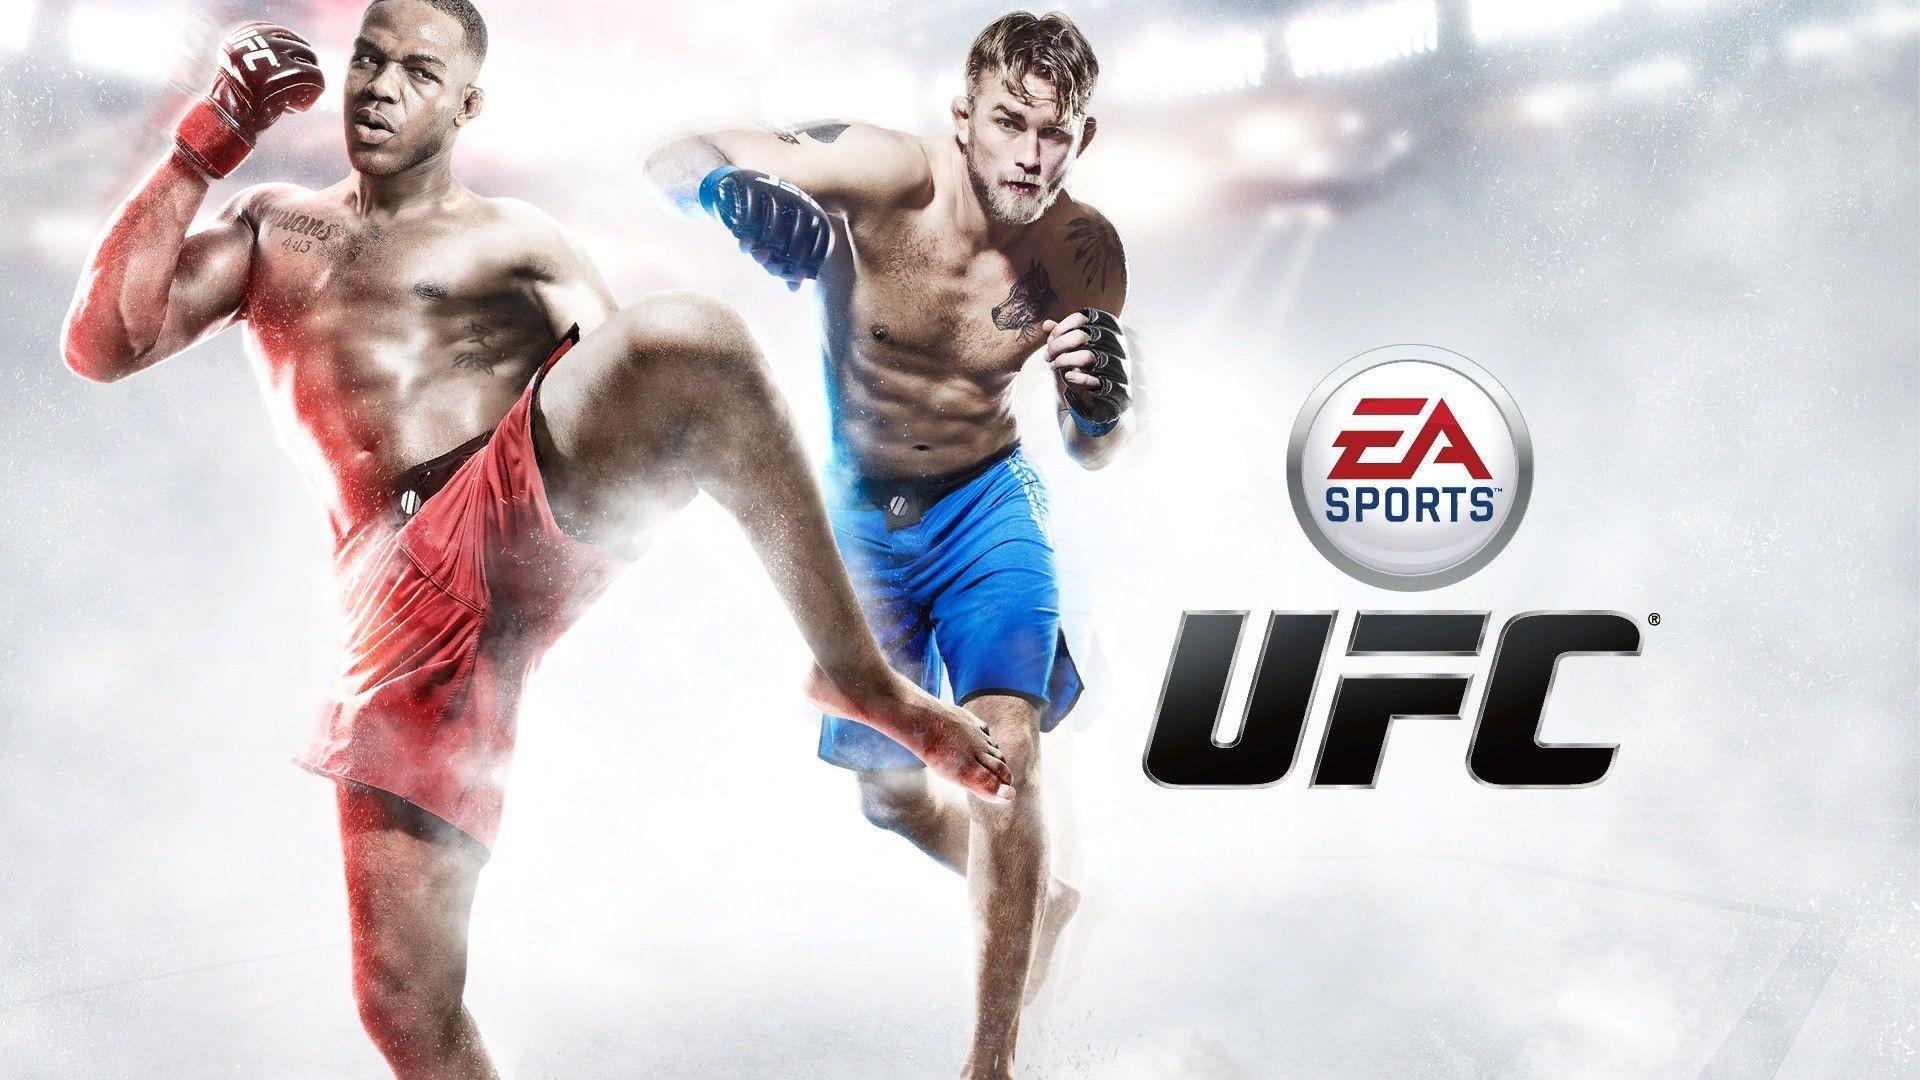 EA Sports UFC Wallpaper. Games HD Wallpaper